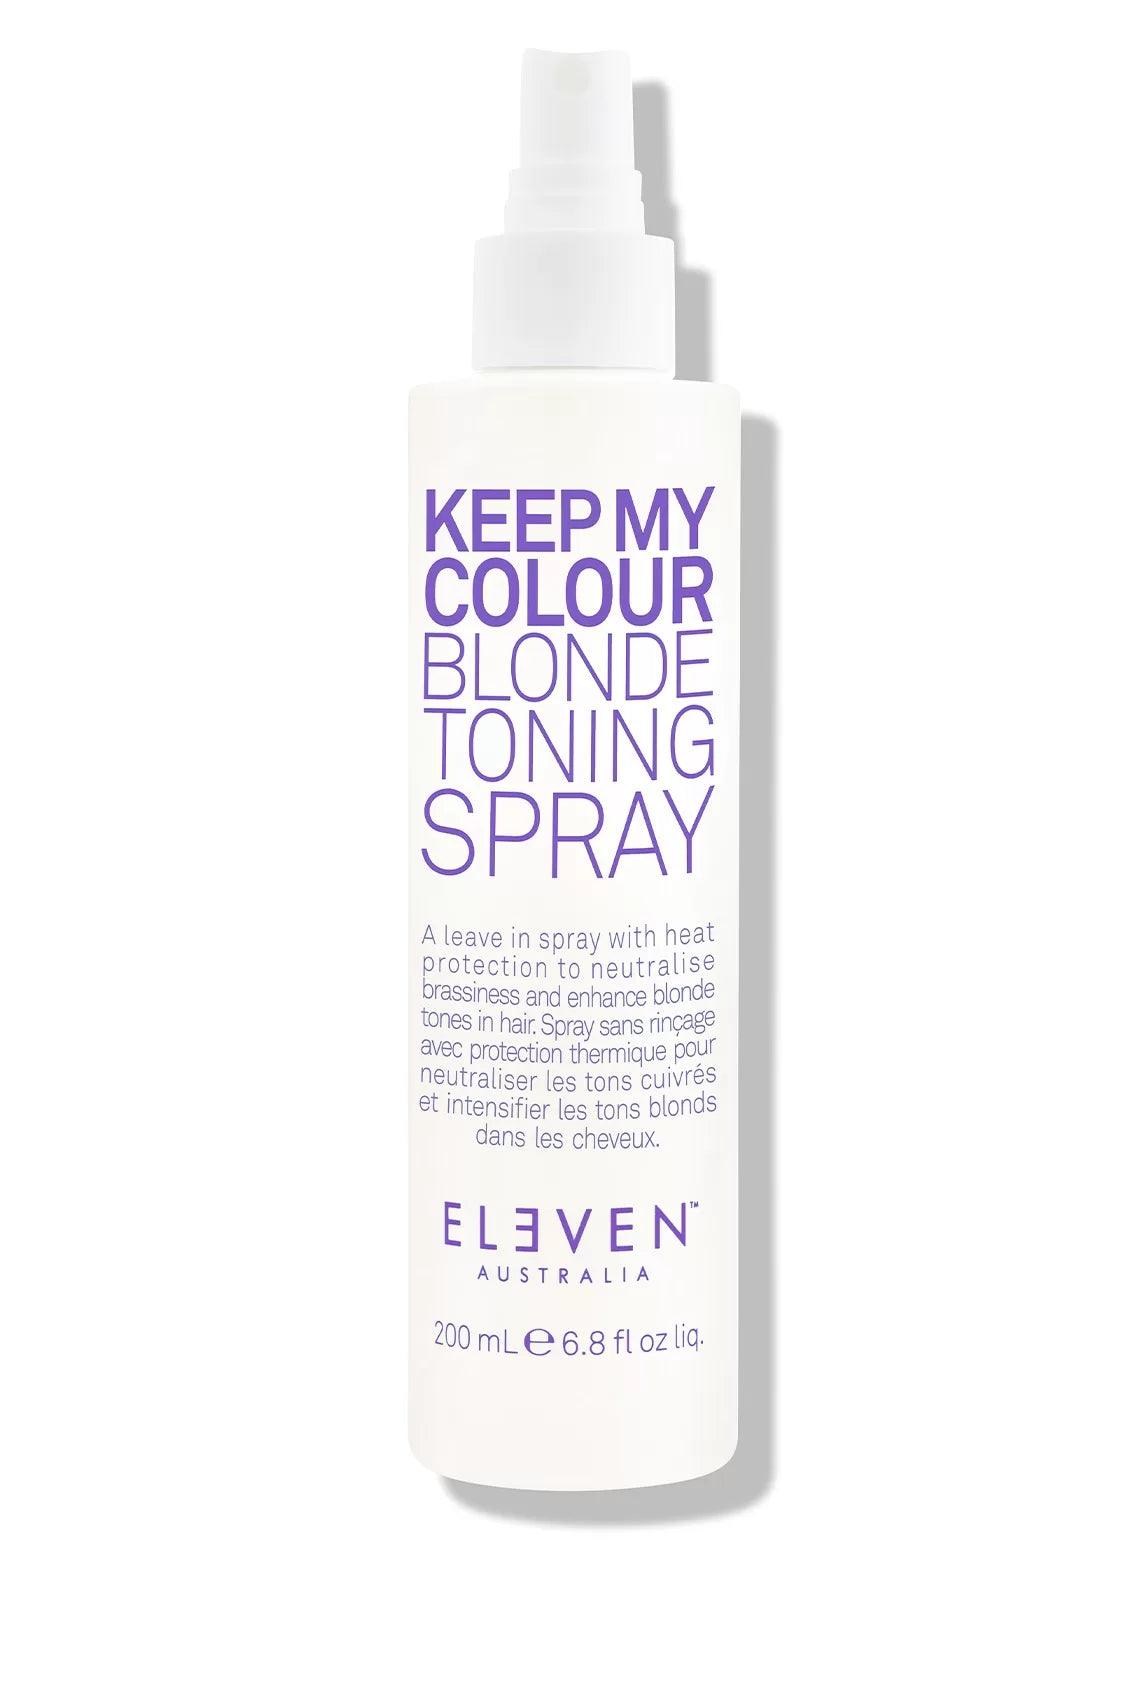 Eleven Australia, Keep My Colour Blonde Toning Spray | Leave-in | Eleven Australia | JK SHOP | JK Barber og herre frisør | Lavepriser | Best